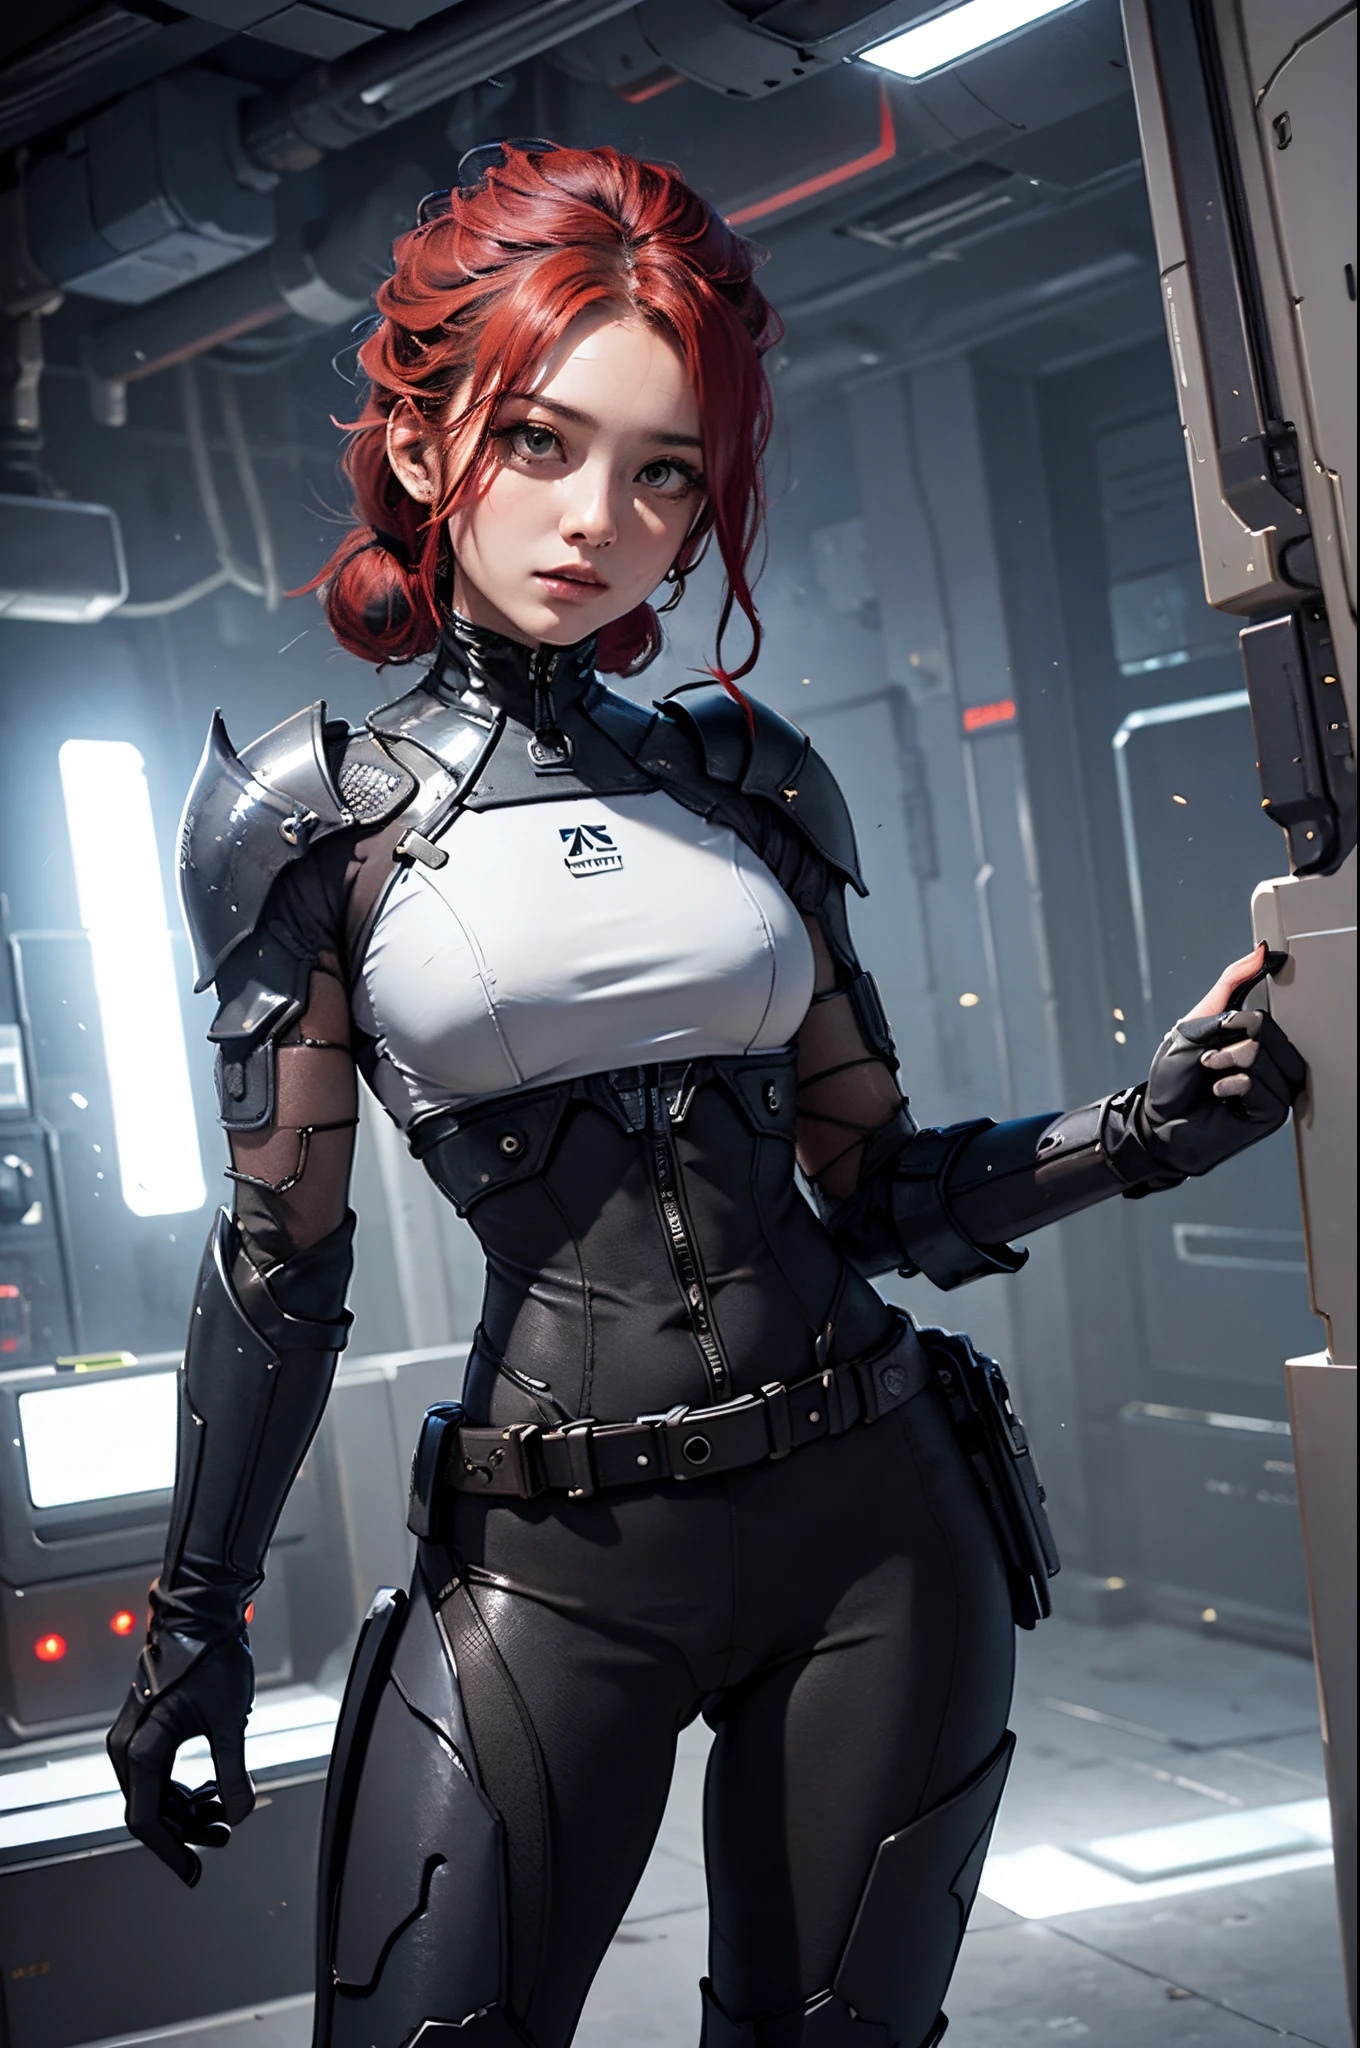 (CUERPO DE MUJER LATINA, Caderas anchas:1.3), sosteniendo el arma,((dedos precisos, dedos correctos, Hermosos dedos)),armadura futurista en cofres pequeños, Mujer asiática de 37 años., poses dinámicas,correa de equipo de pelo rojo en la cintura, arma en la cadera, (mono :1.2), (guantes de armadura mecanica:1.3),cibertrajes femeninos,(mecánico armor leggins:1.2), mecánico, electricidad, detalle elaborado,armadura en estilo cyberpunk, cyborg femenino.campo de batalla de diversos cibertrajes, Toma completa, plano integral fotografia, cámara de ángulo bajo,